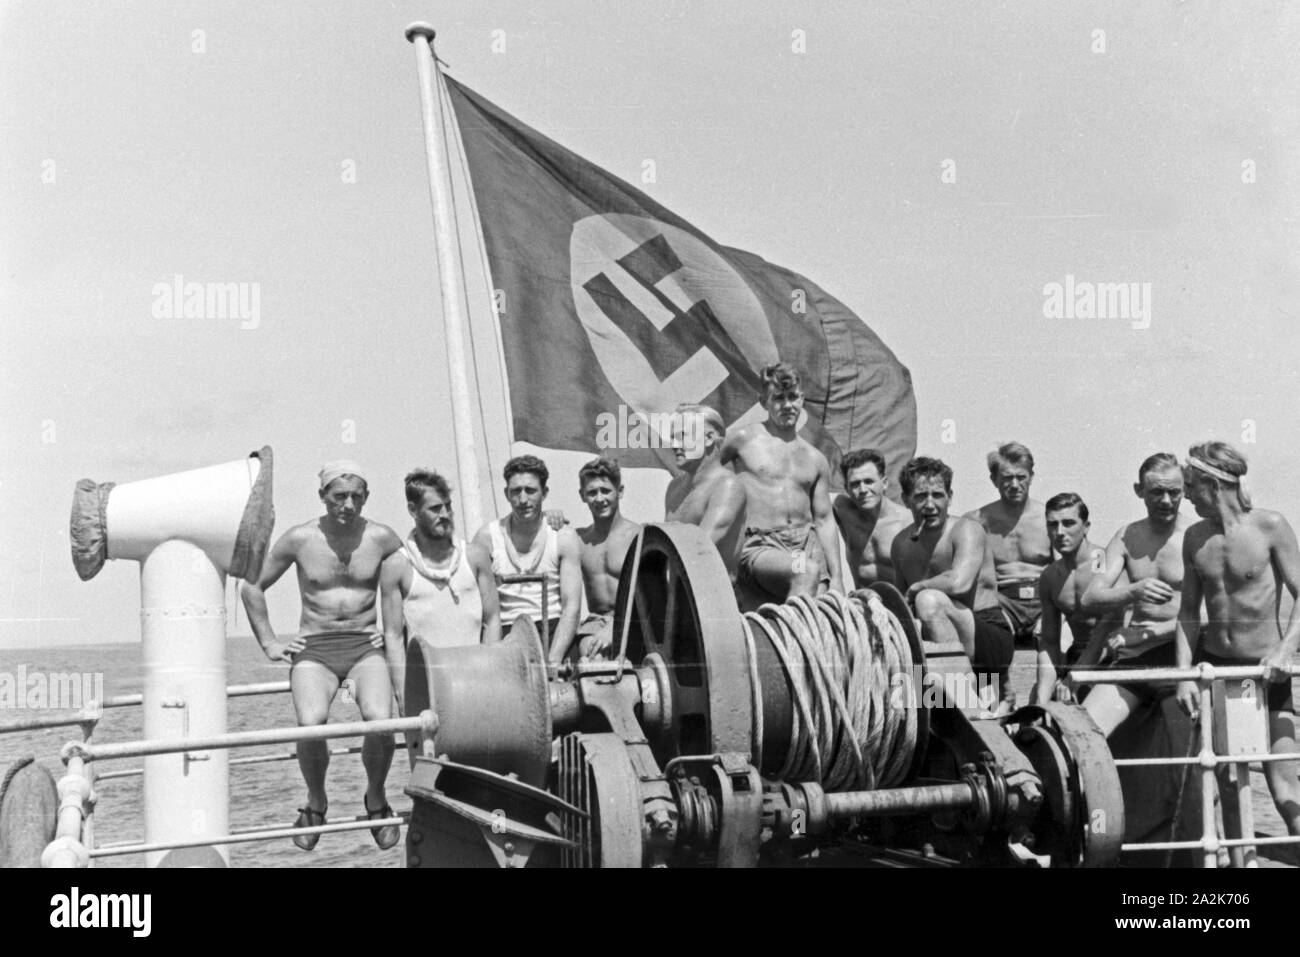 Sterben unter Mannschaft des Fabrikschiffs "Jan Wellem" der Reichsflagge am Heck des Schiffs, 1930er Jahre. Die Crew der Fabrik Schiff "Jan Wellem" unter der Flagge am sten, 1930er Jahre. Stockfoto